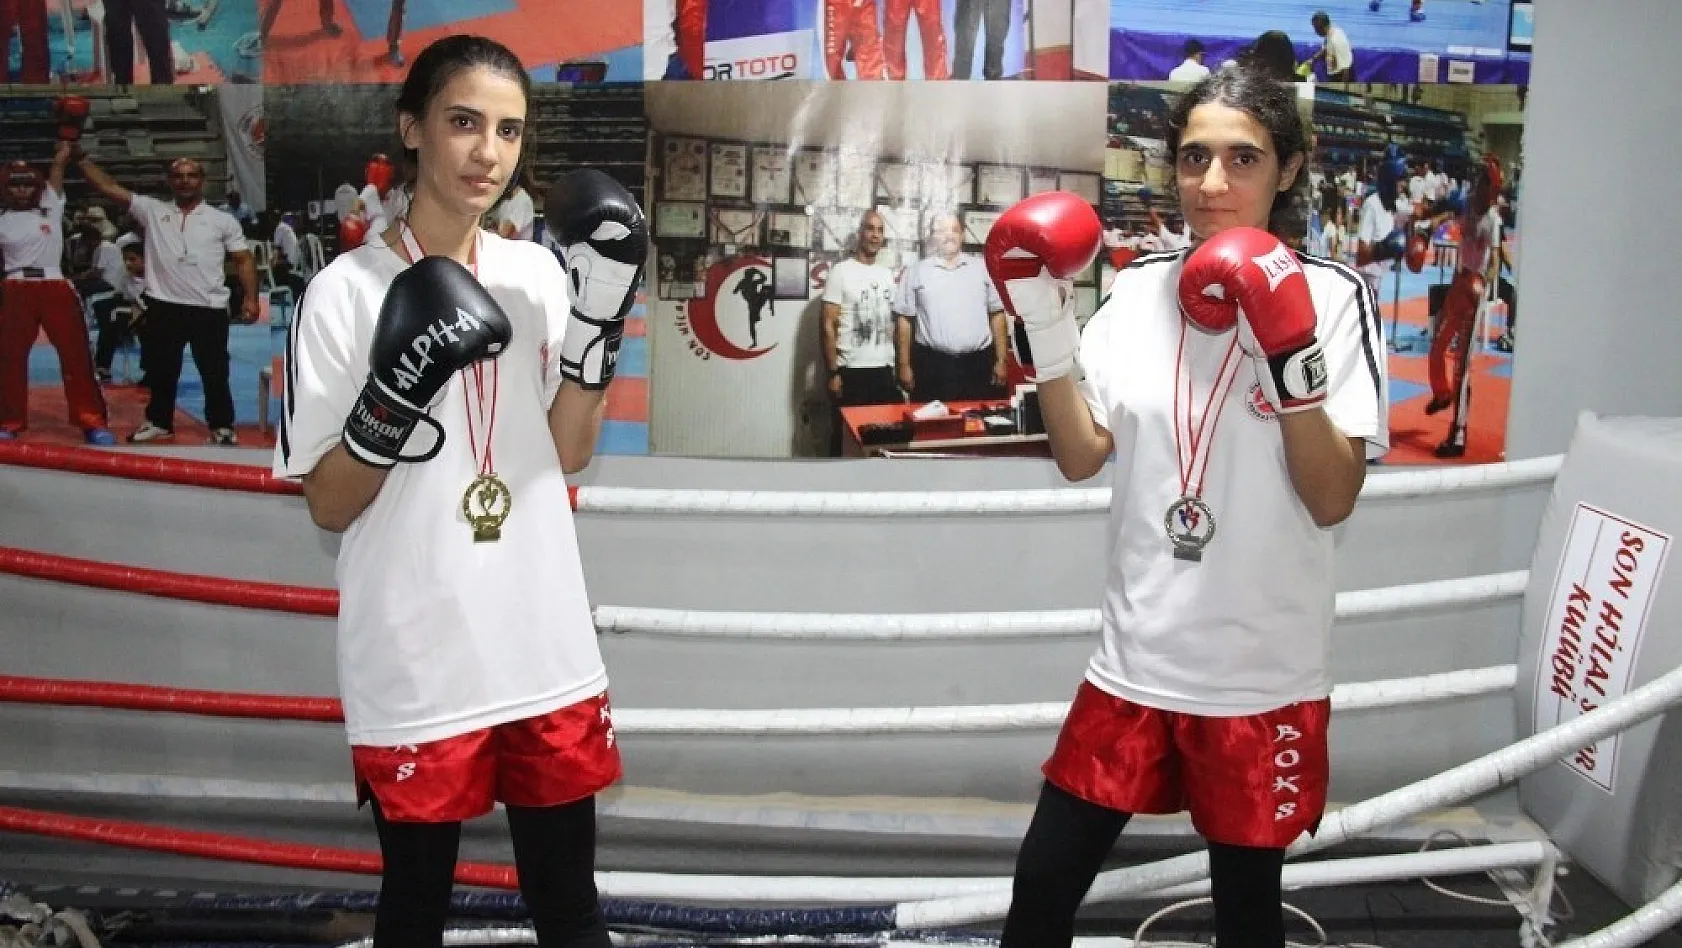 İki Kız Kardeşin, Kick Boks Başarısı